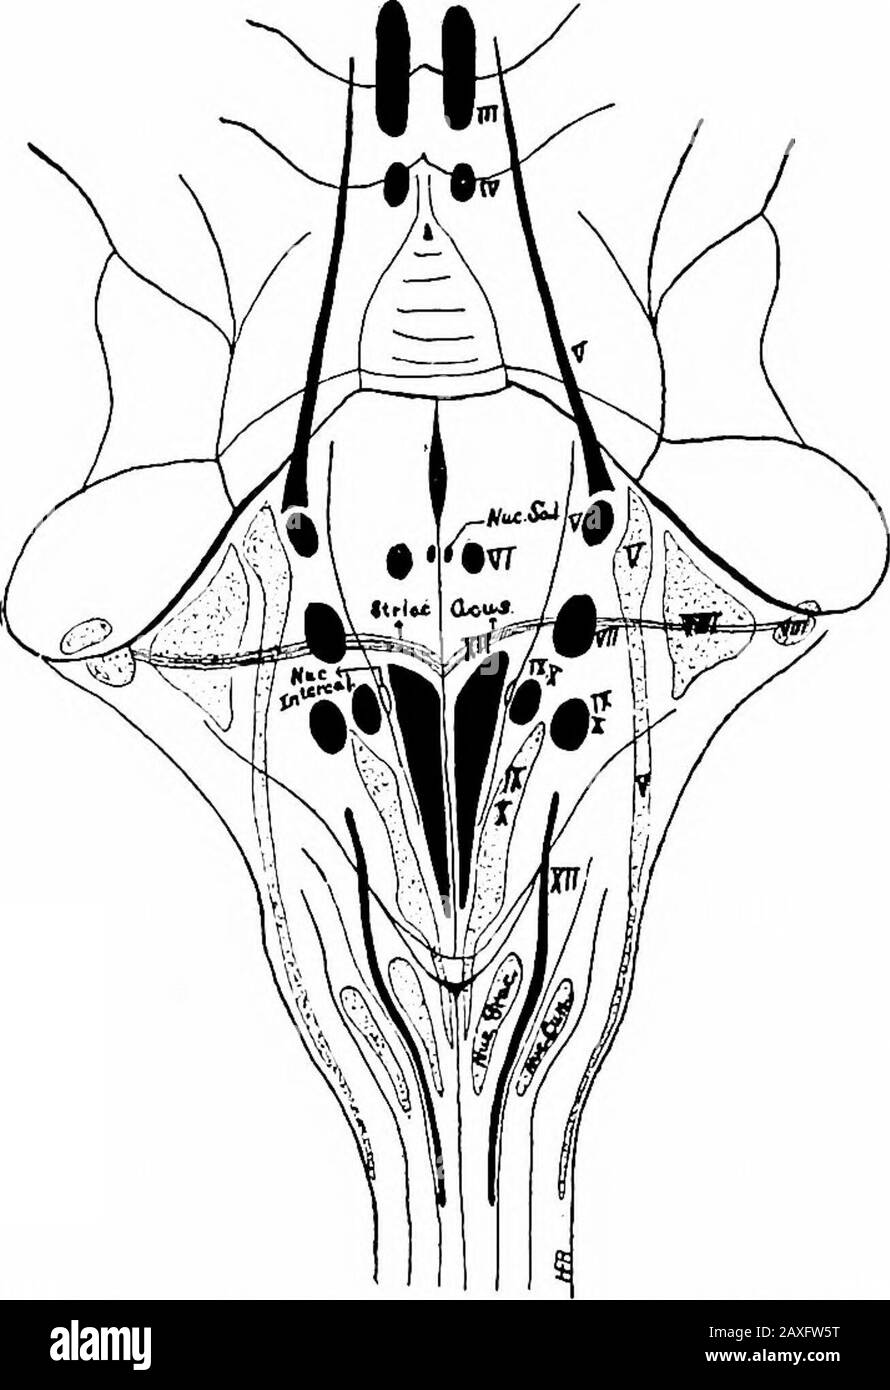 Un manuel d'anatomie . ve un parcours longitudinal. Dans la région juste dorsale aux fibres de pons sont les pyramides, twolarge compact faisceaux de fibres longitudinales sur leur chemin vers theoblongata. Certaines de ces fibres se terminent dans les noyaux pontisreprésentant les fibres cérébropontiles. Le dorsal aux pyramides est vu le nombre d'avariables de fibres pontiles transversales plus profondes. Les arcuatefies et les noyaux de l'oblongata sont analogues aux noyaux des fibres de pons et des noyaux pontiles. Le dos aux pons se trouve les fibres du lemnisque médial formant l'a26 402 LE SYSTÈME NERVEUX plutôt compact de chaque côté du rache. Banque D'Images